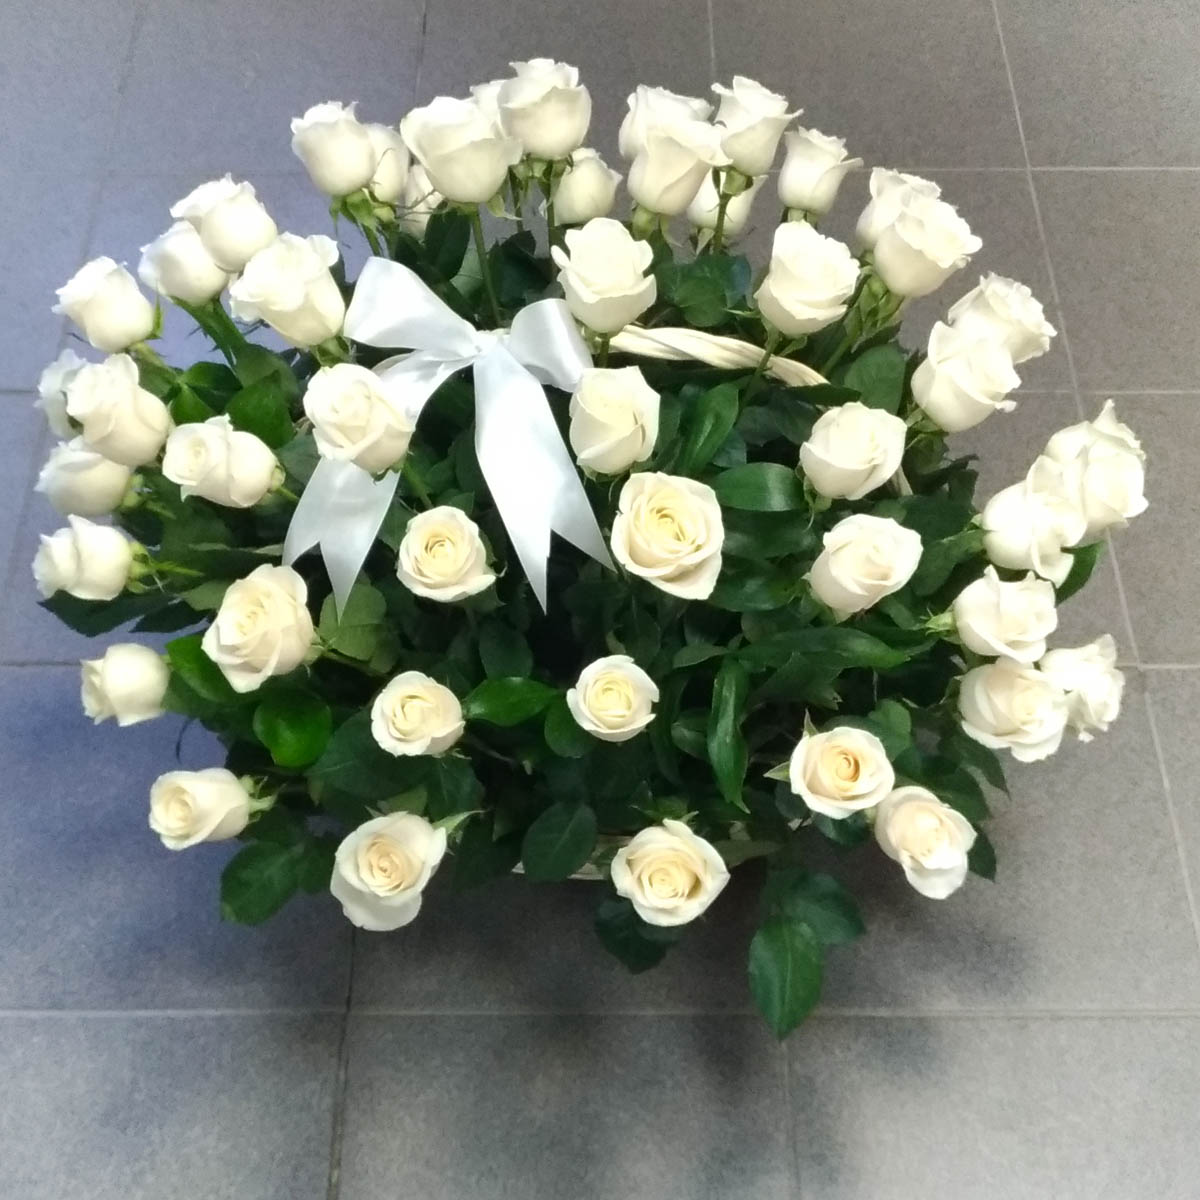 Большая корзина 51 белая роза - Фотография цветов перед доставкой 2